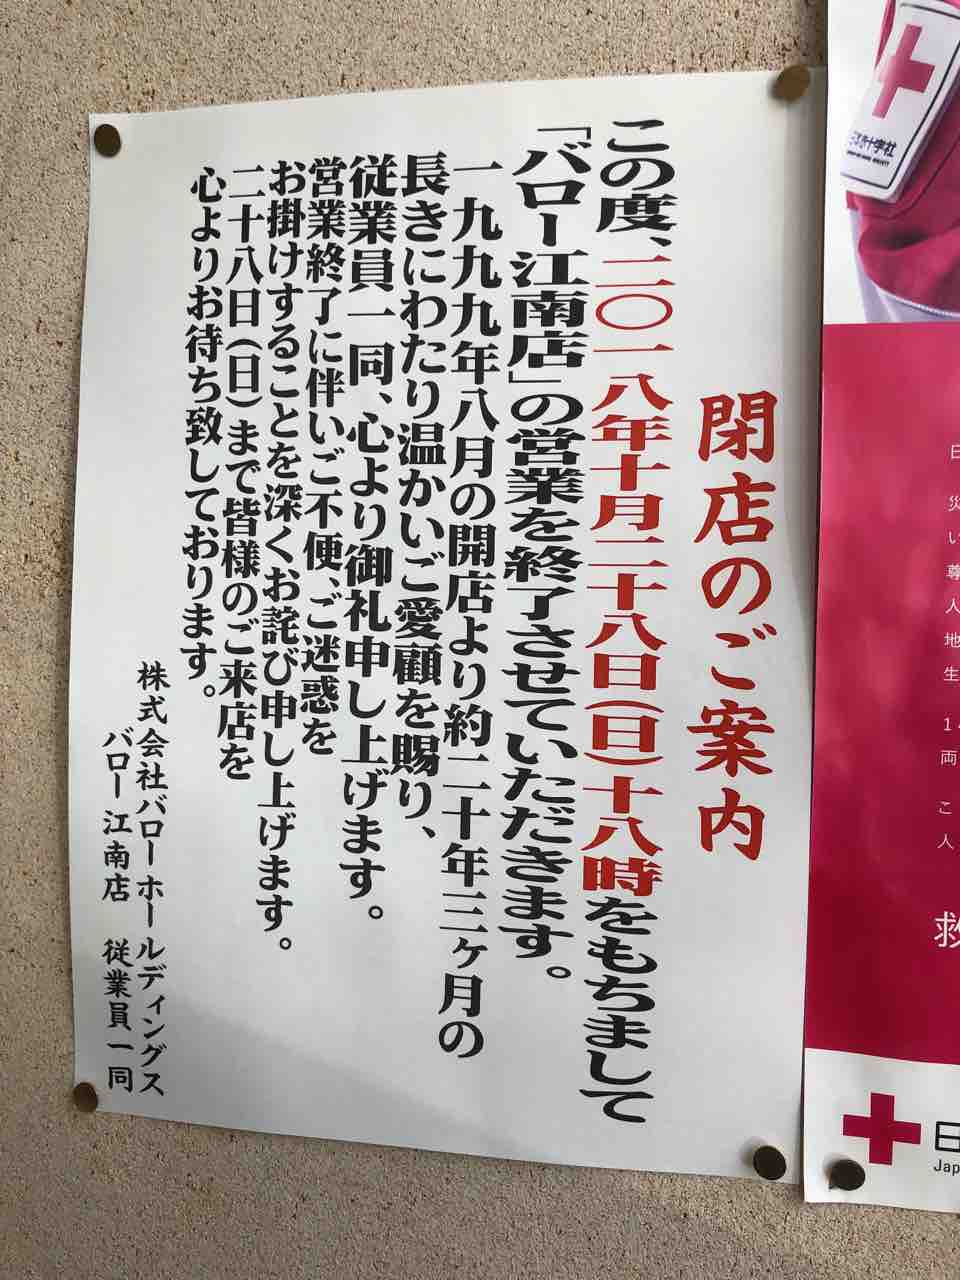 「スーパーマーケット バロー valor 江南店」10/28閉店